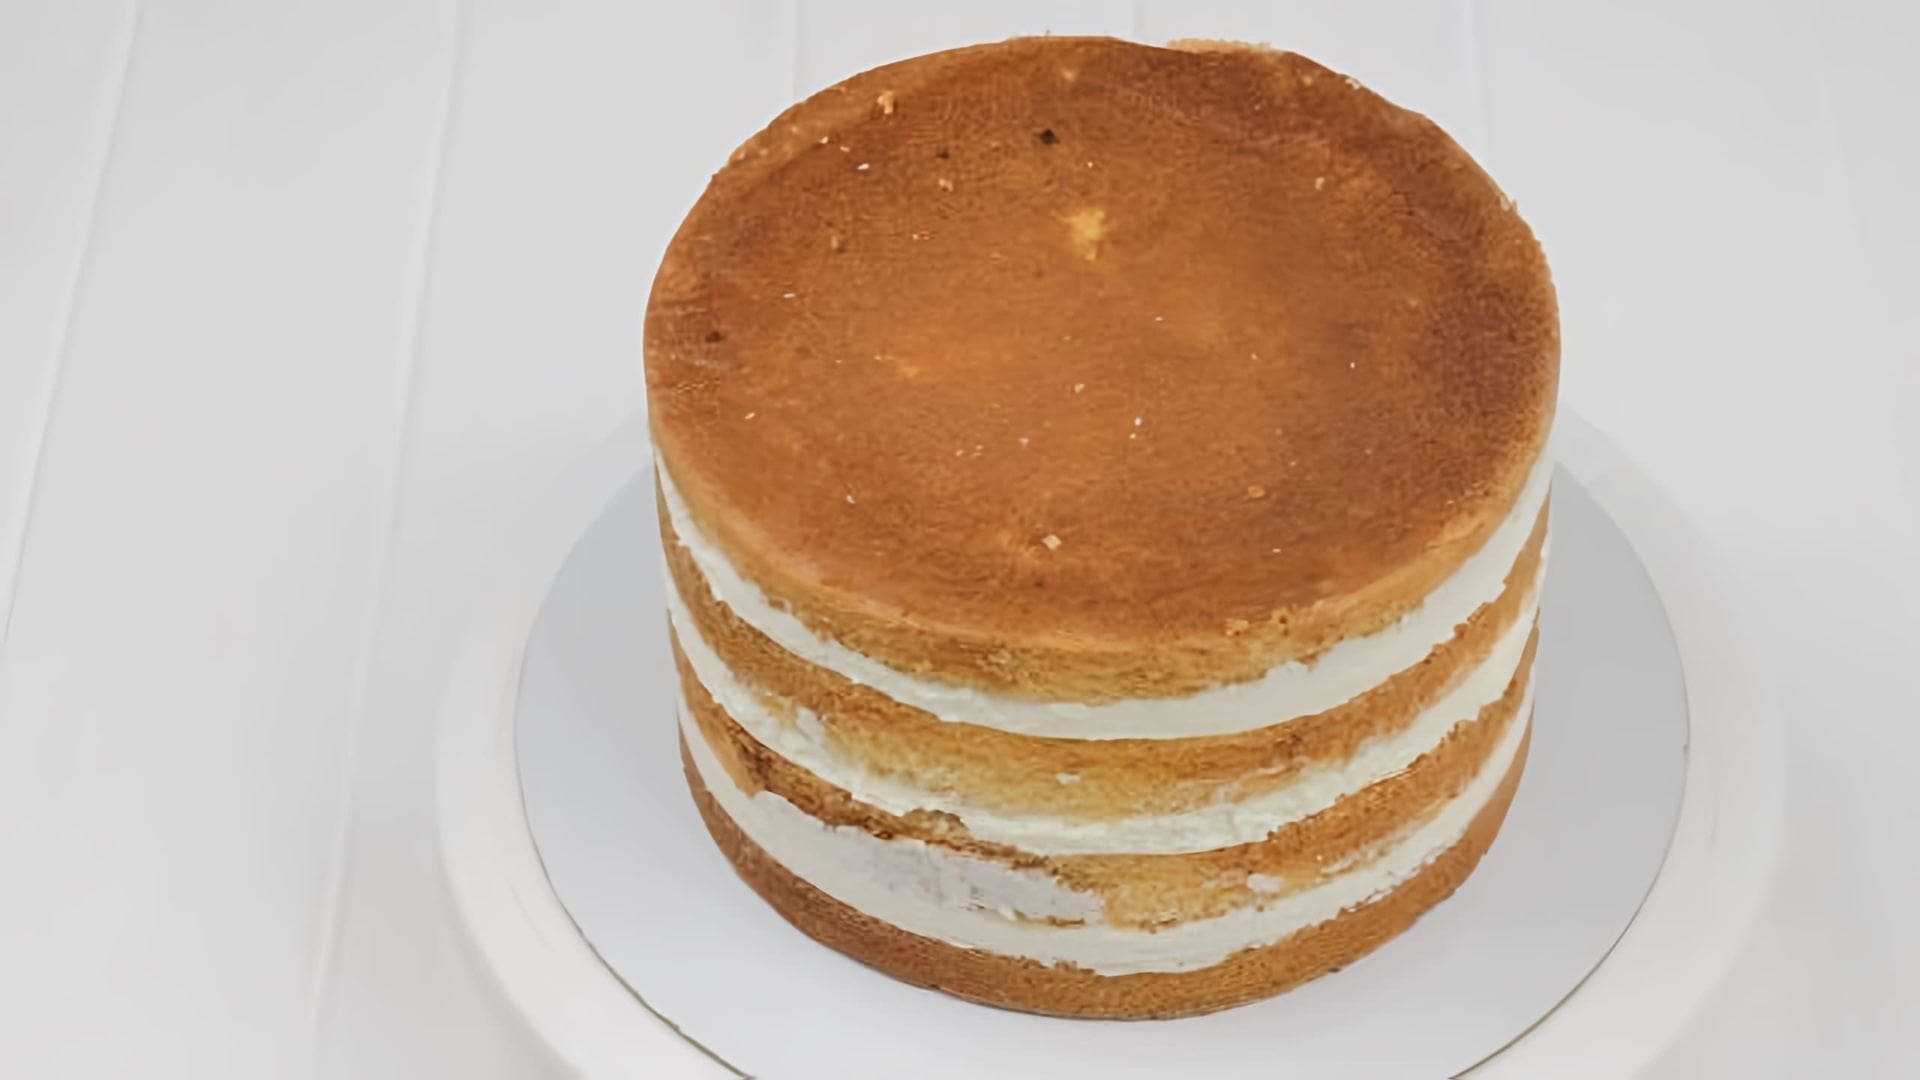 В этом видео демонстрируется простой рецепт торта, который отлично подходит для экспериментов с начинками и различными вкусами